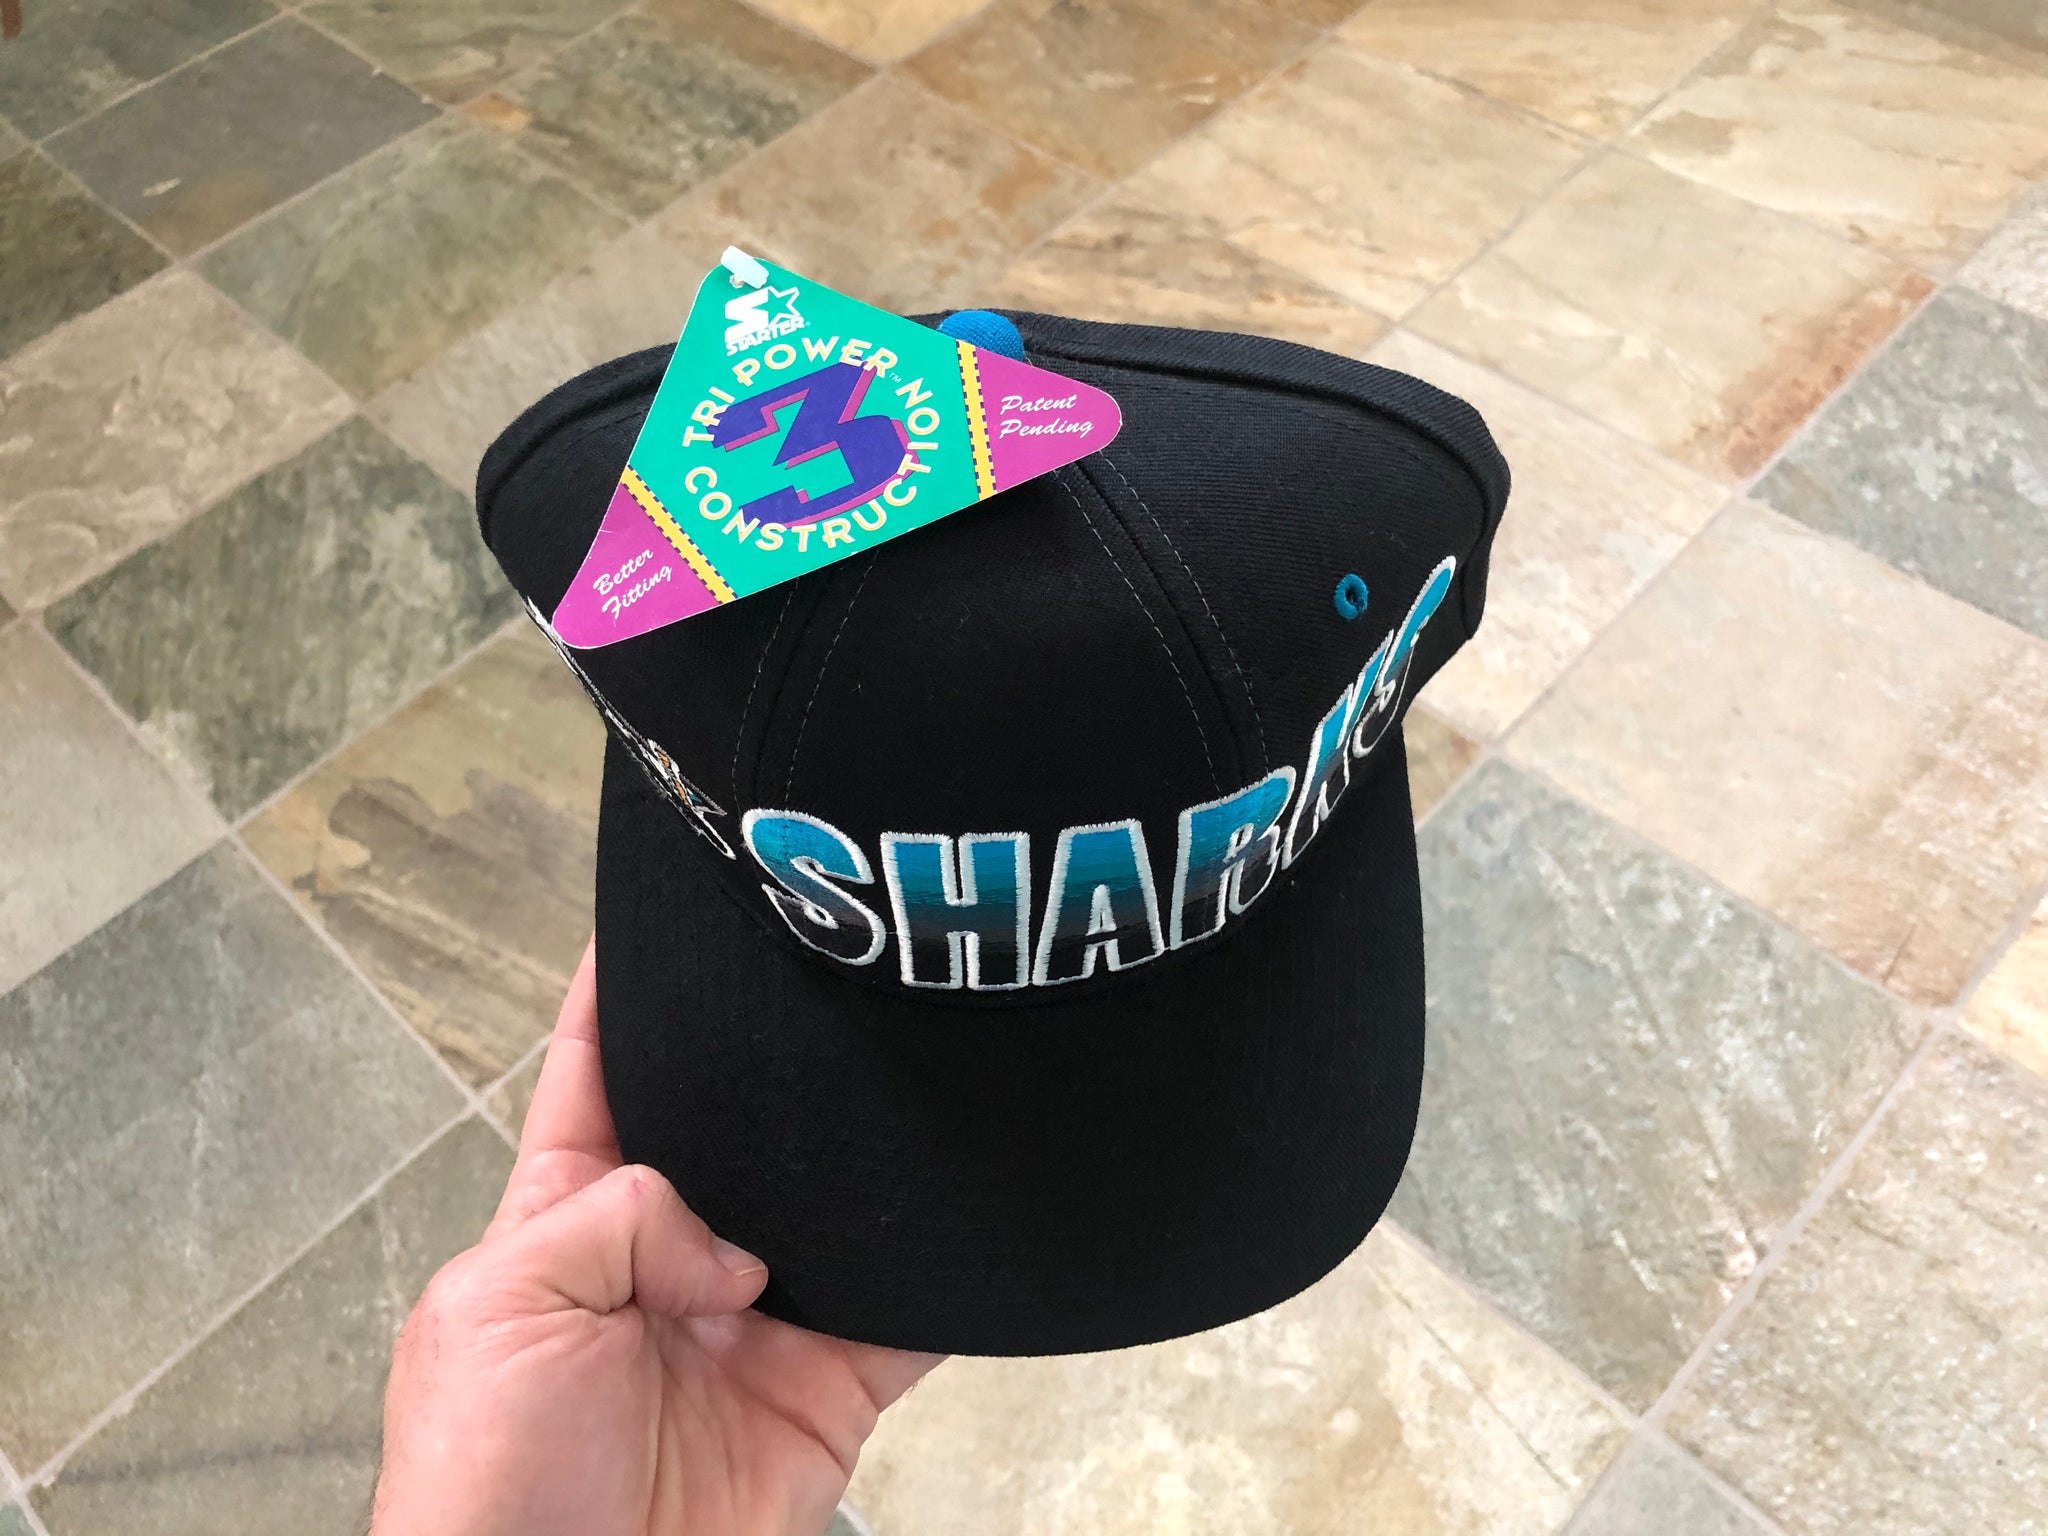 Vintage Starter San Jose Sharks Hat